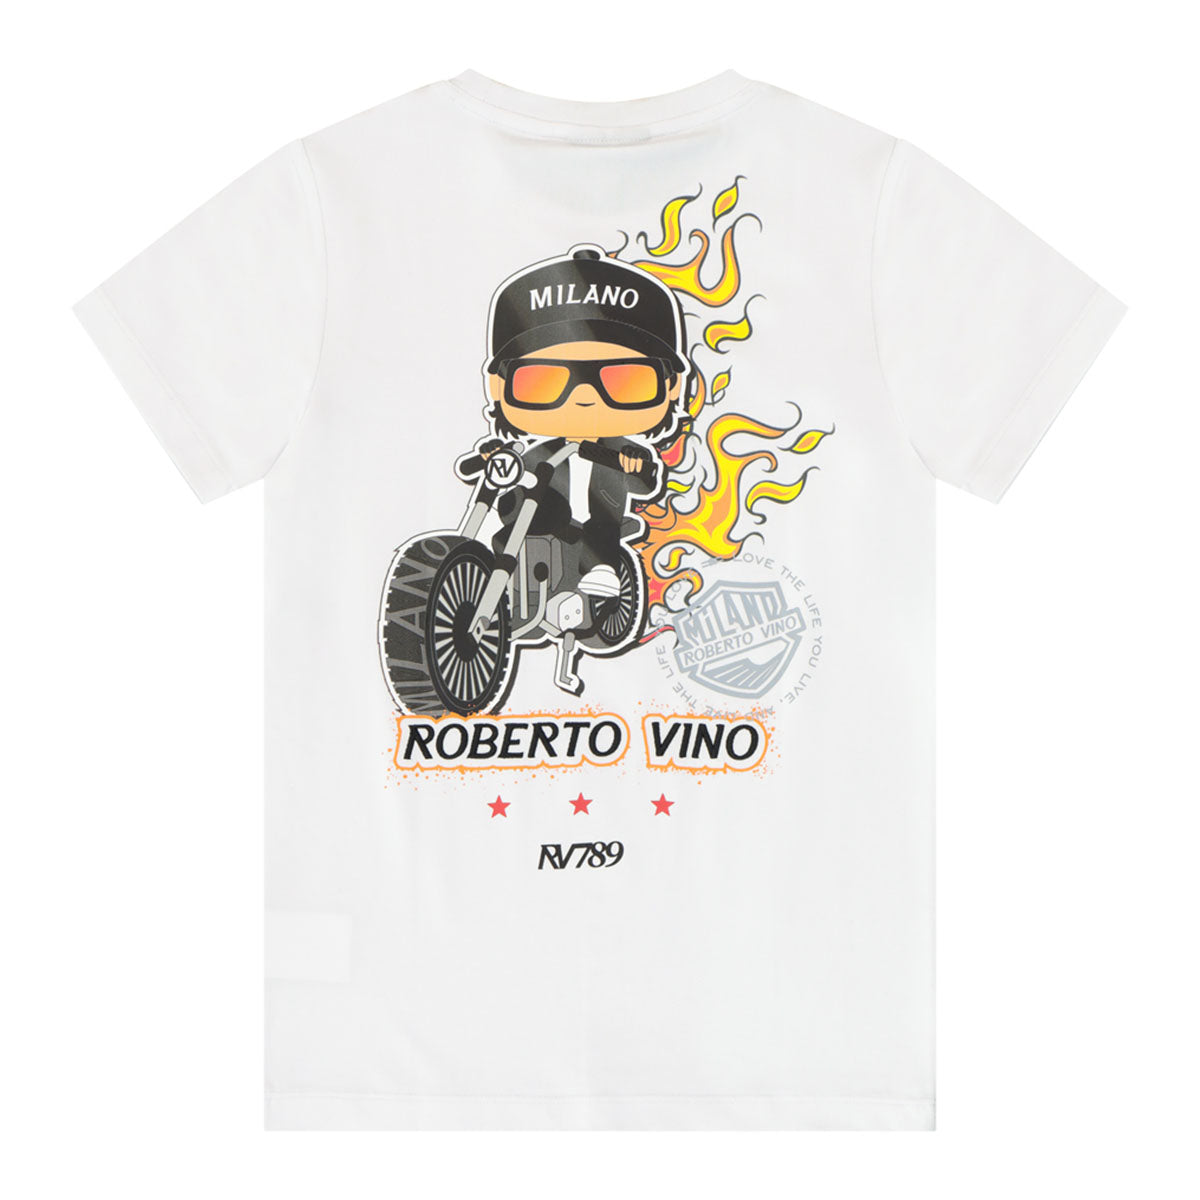 חולצת טי שרט ROBERTO VINO ילד על אופנוע לילדים